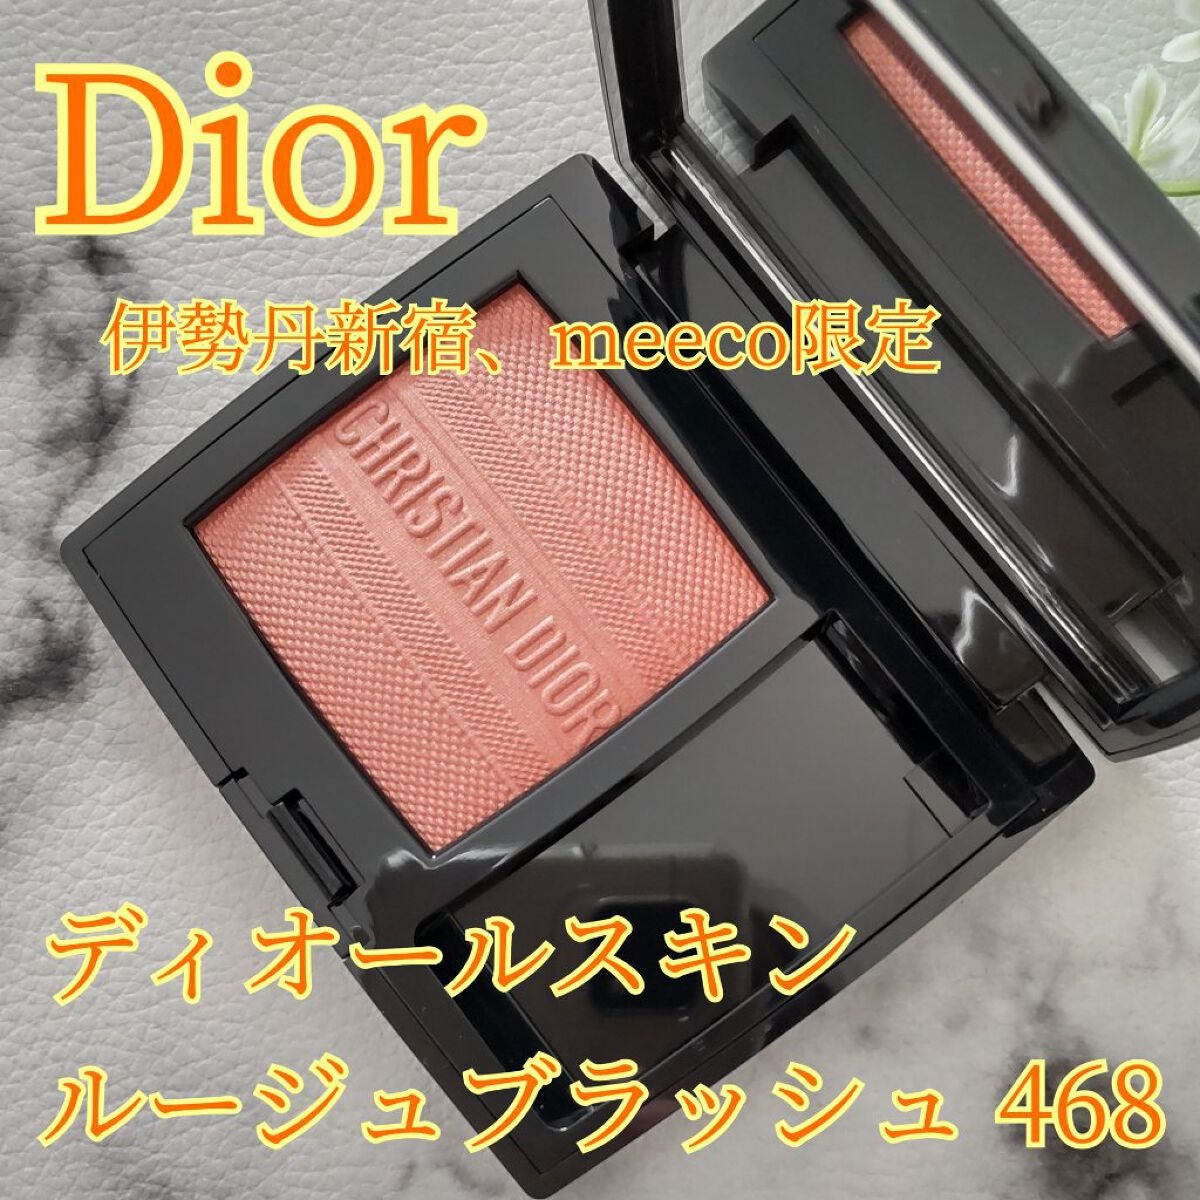 Dior ディオール 限定 スキン ルージュ ブラッシュ 468 チーク - チーク